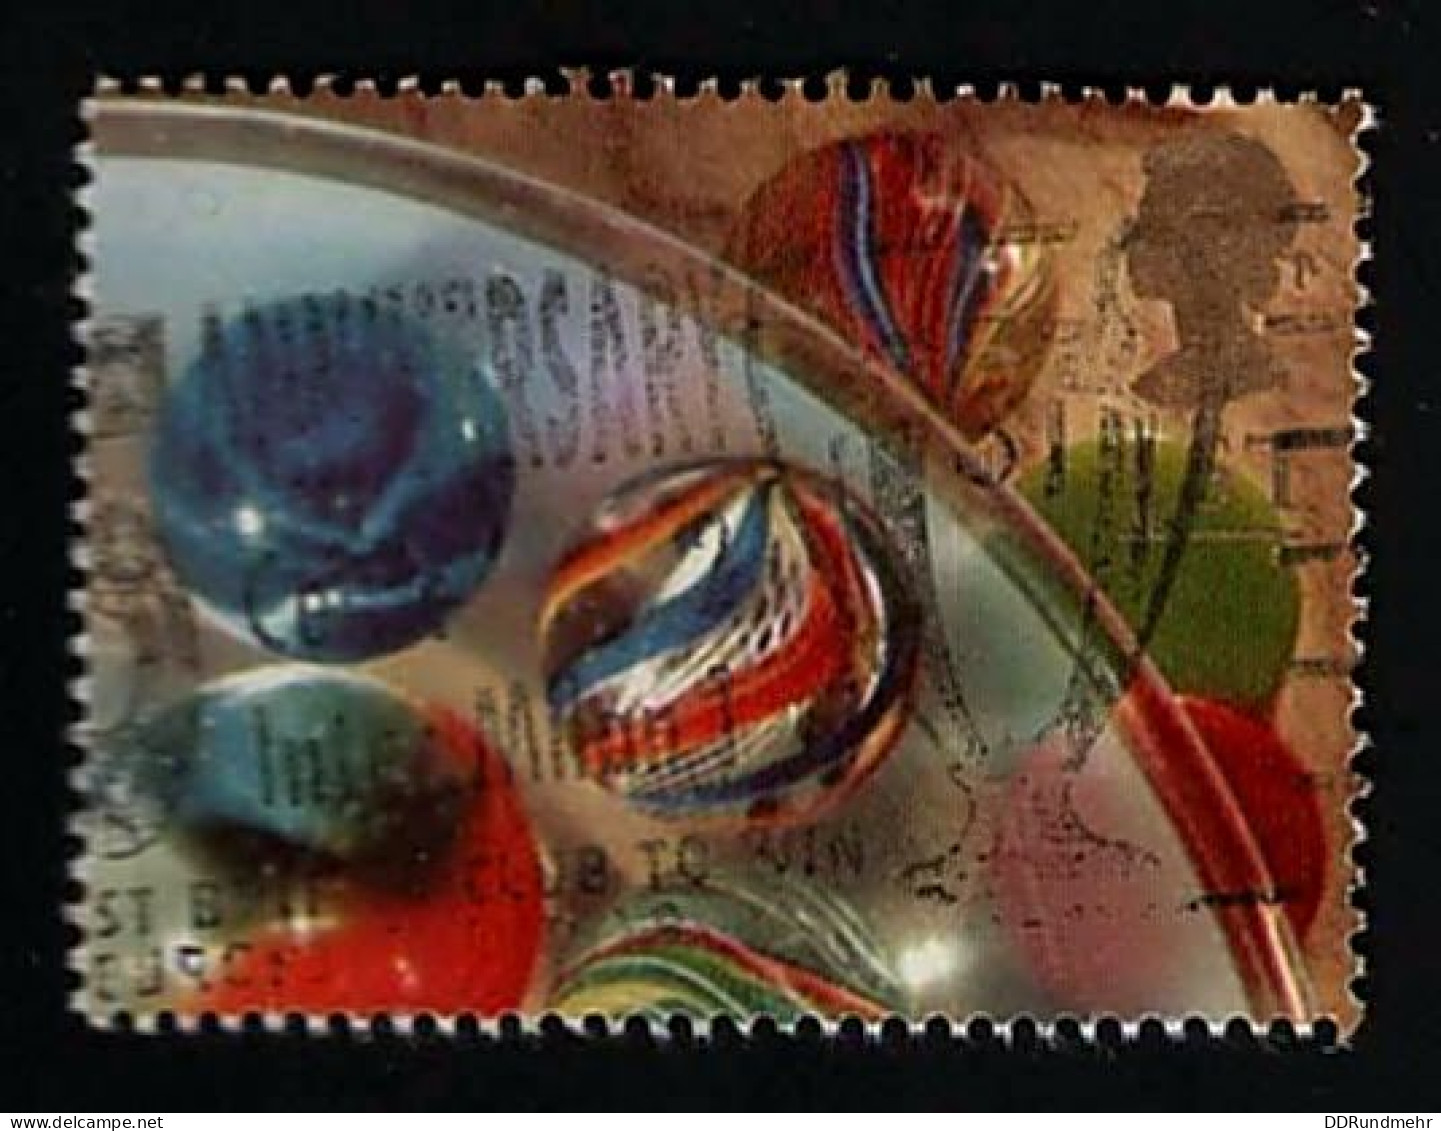 1992 Marbles Michel GB 1385 Stamp Number GB 1434 Yvert Et Tellier GB 1604 Stanley Gibbons GB 1600 AFA GB 1539 Used - Gebruikt